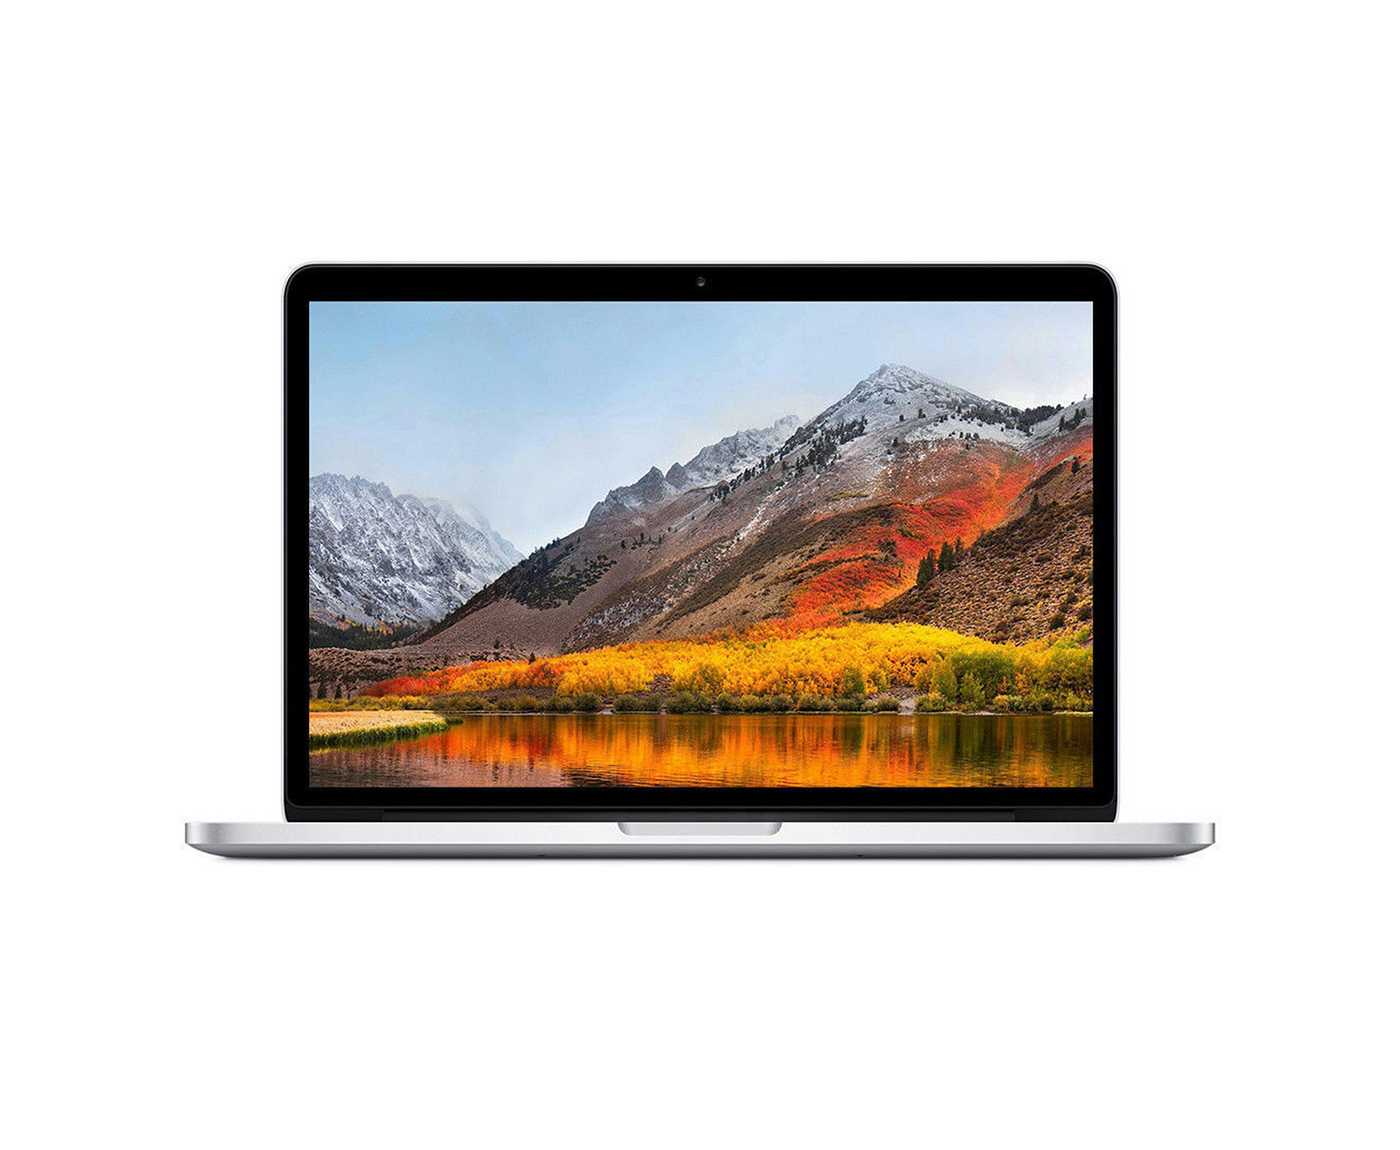 Apple Macbook Pro A1502 13.3″ Retina screen ME864LL/A Late-2013 Core i5-4258U 2.4GHz 8GB RAM 256GB SSD MAC OS